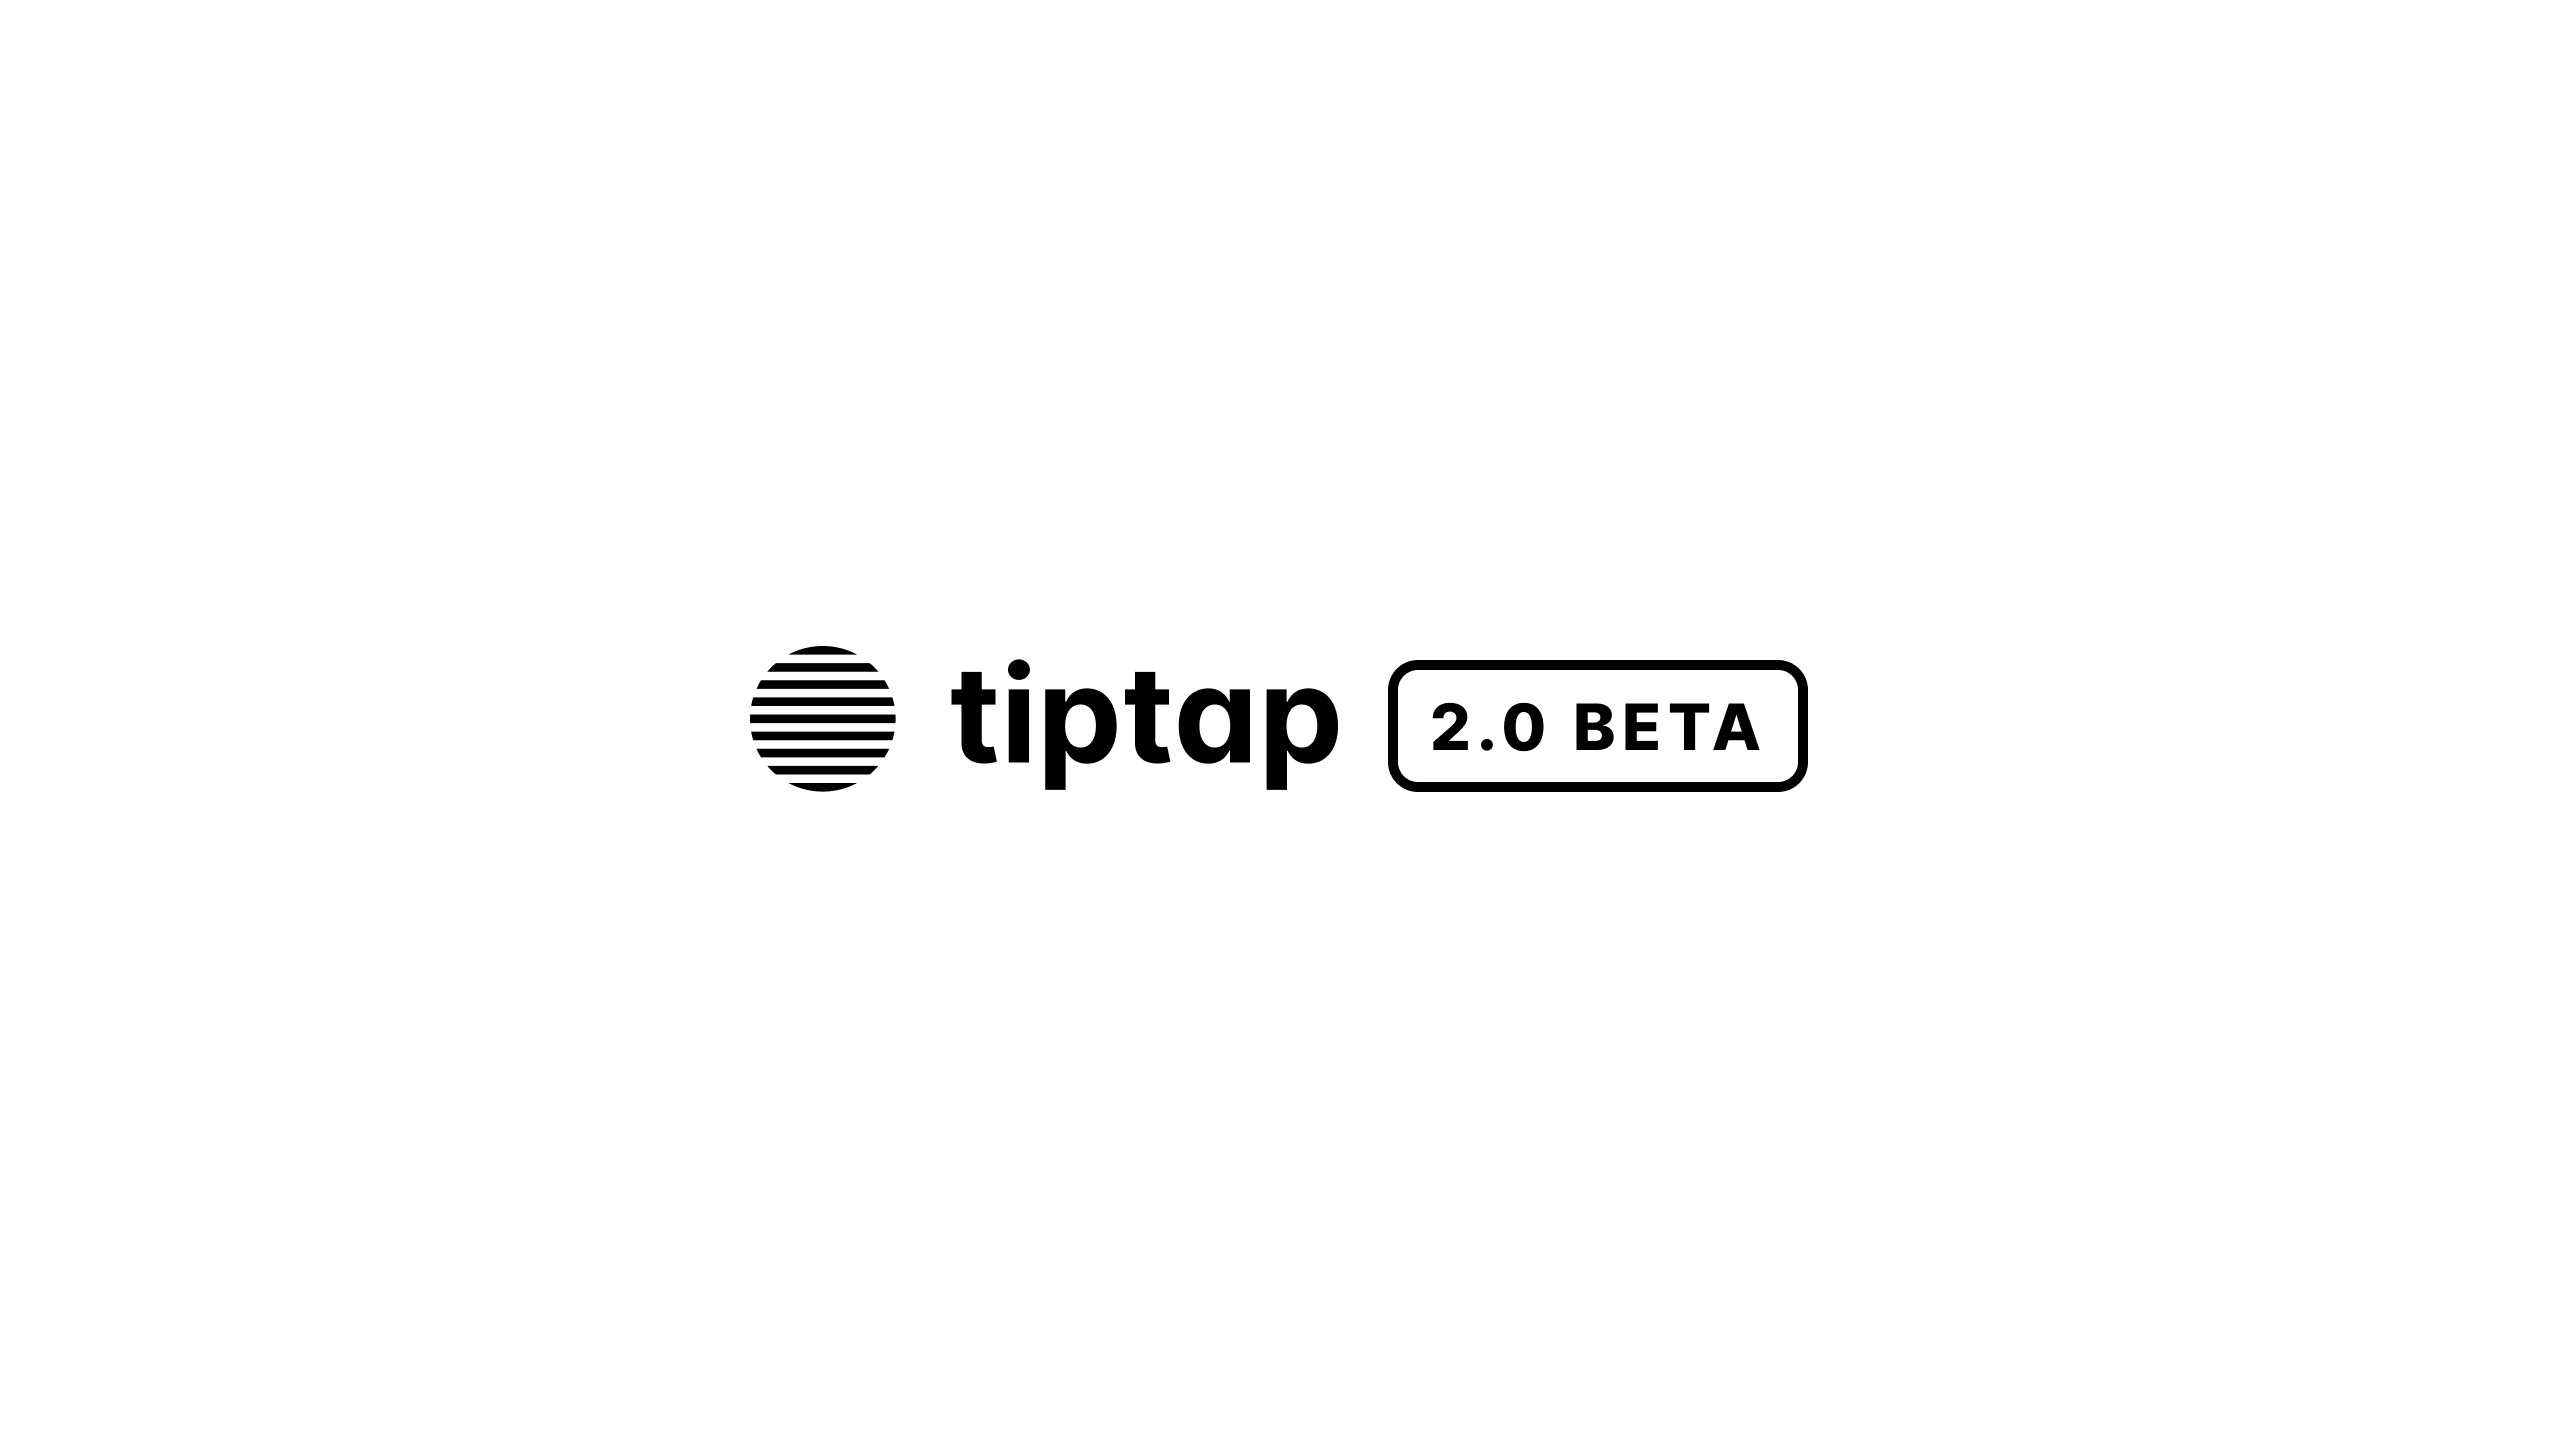 the tiptap 2.0 logo